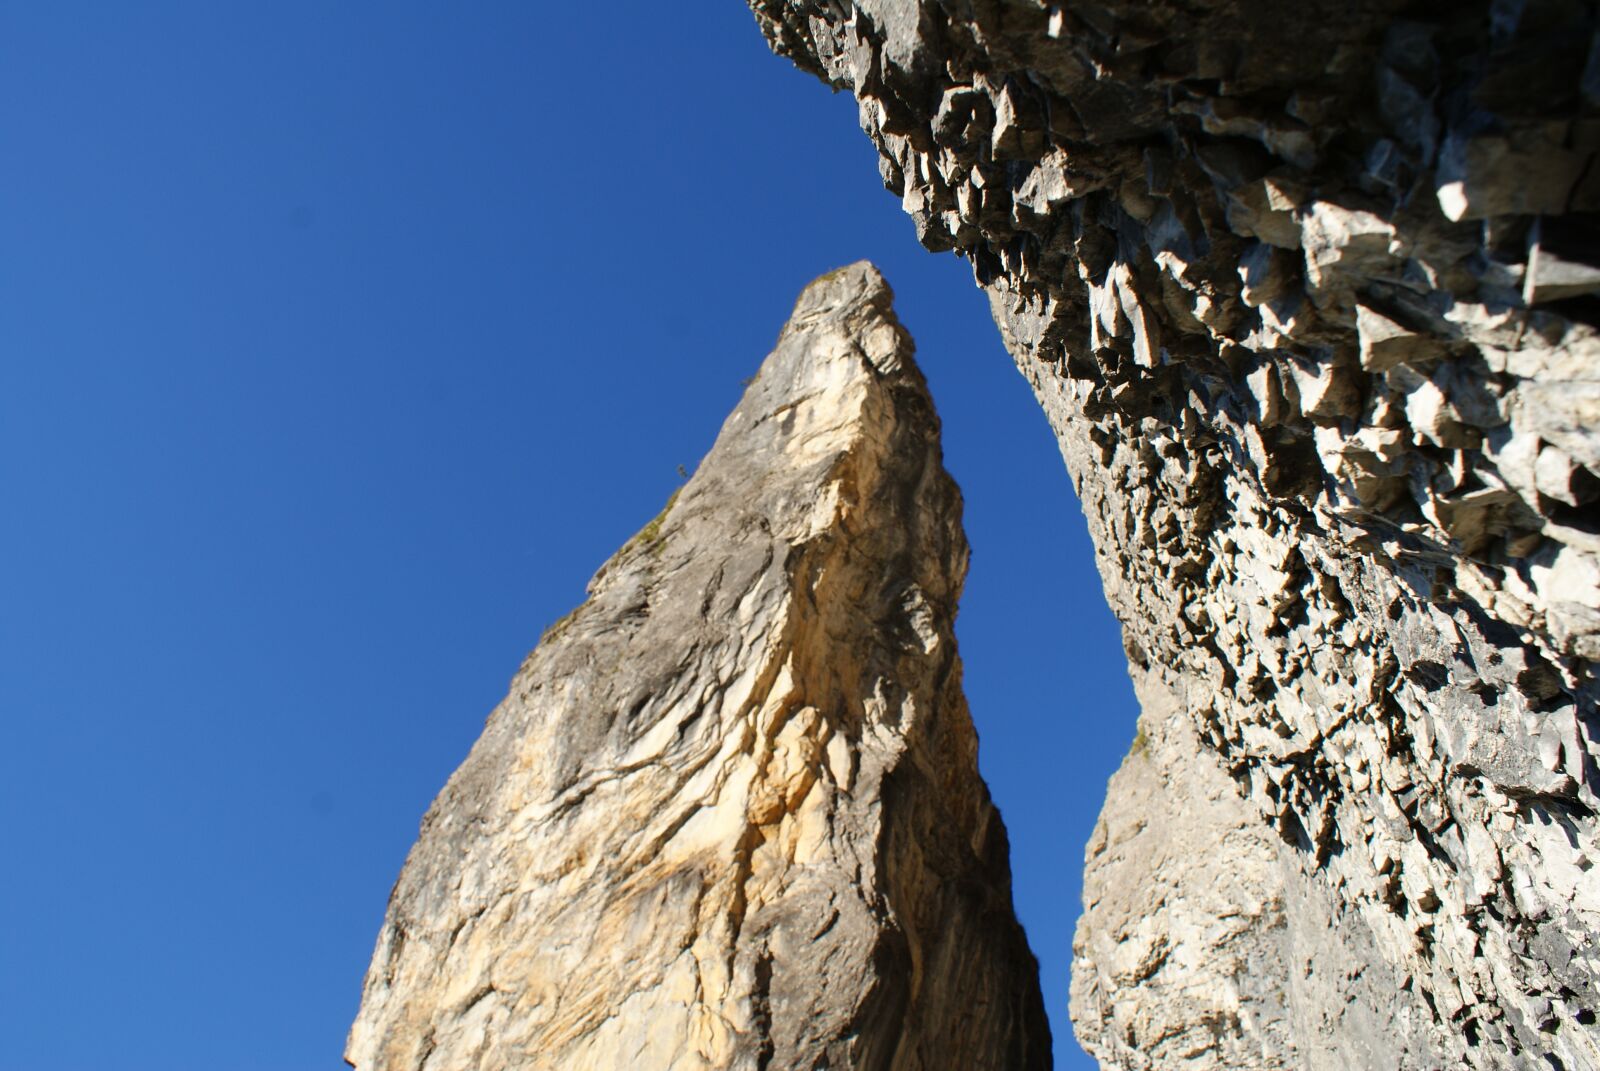 Sony Alpha DSLR-A200 sample photo. Rock, mountain, landscape photography